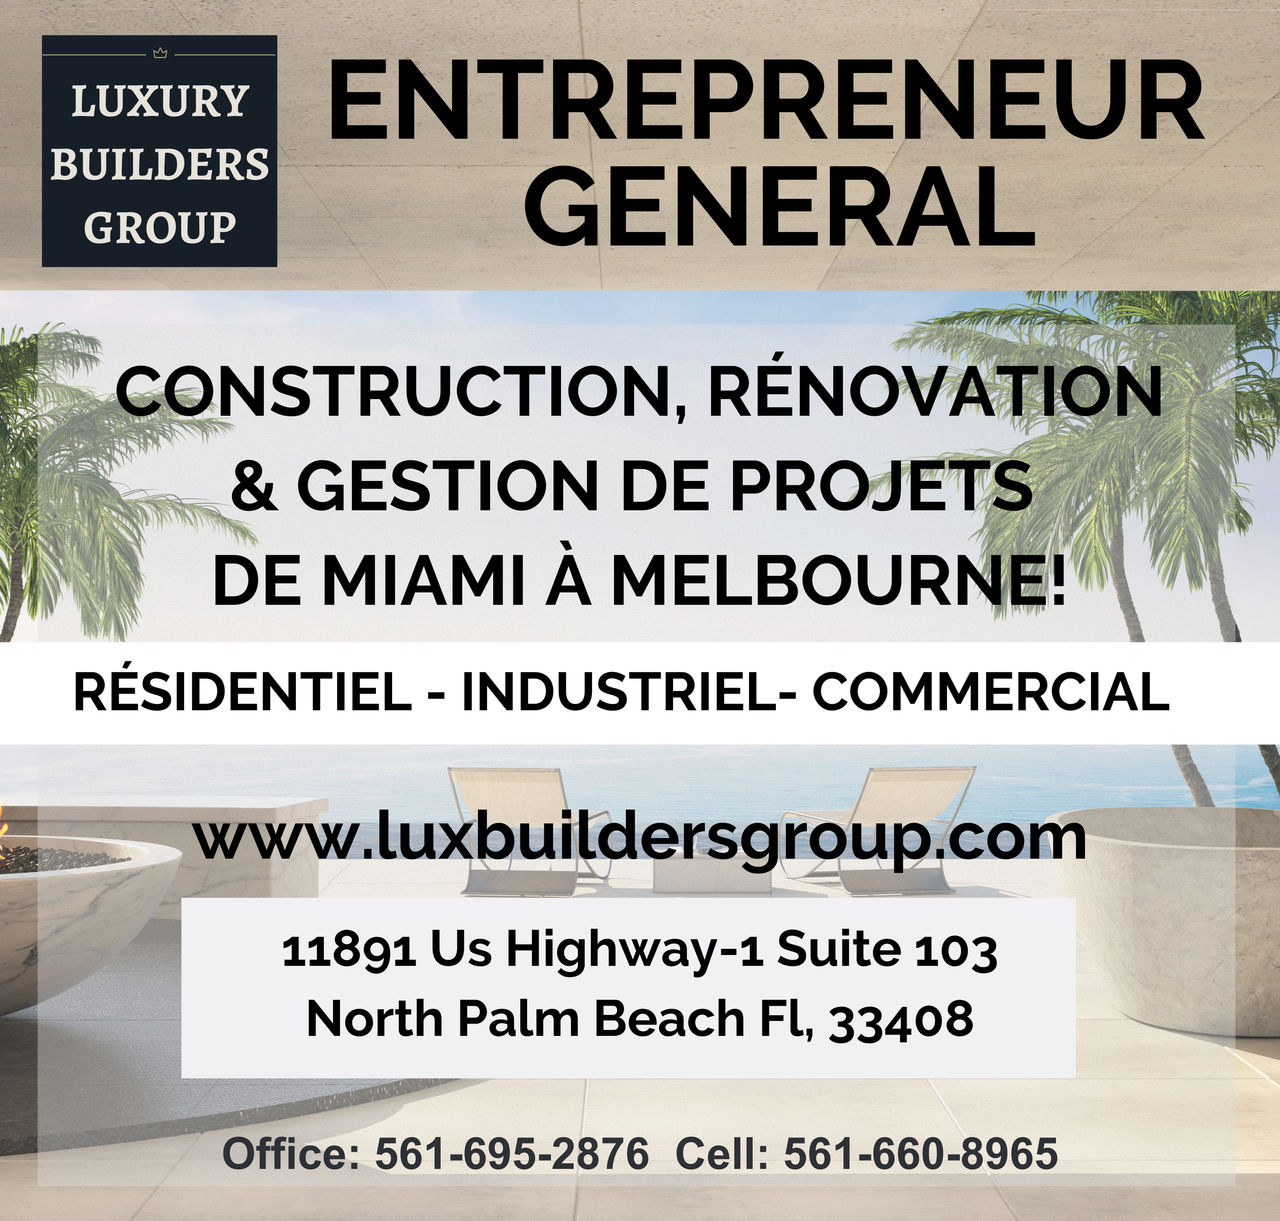 Entrepreneur général Luxury Builders Group